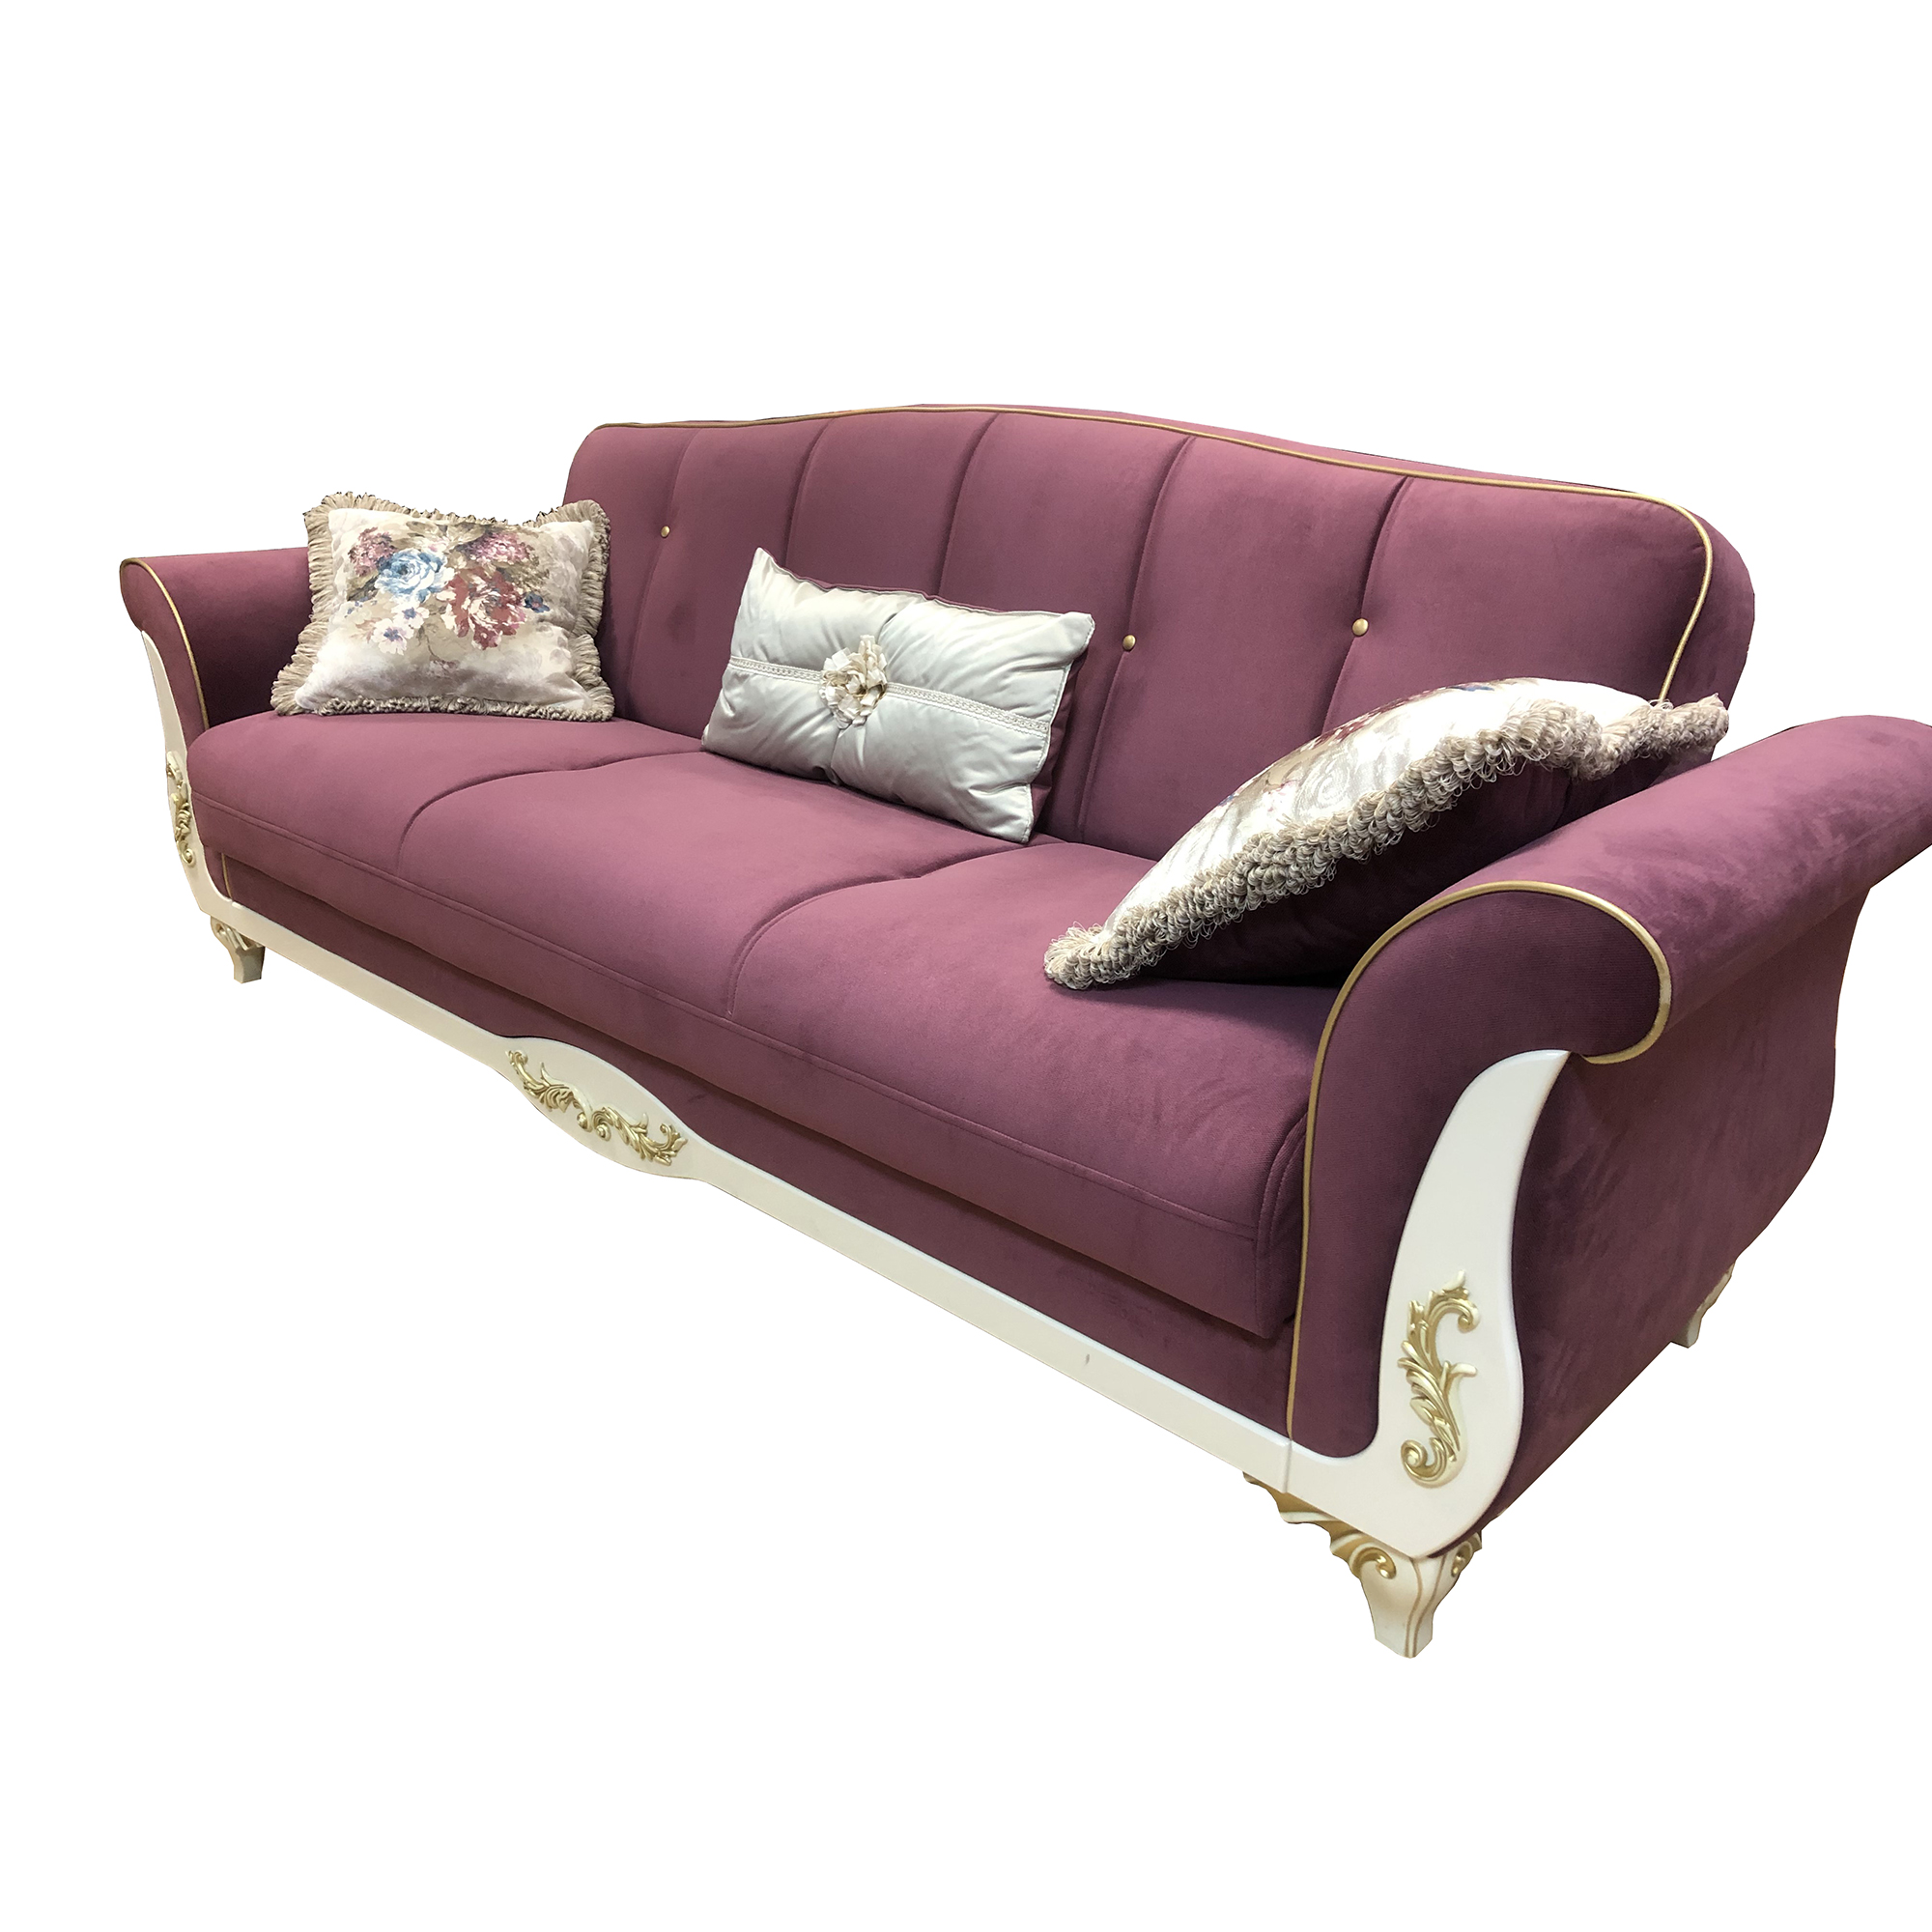 Диван-кровать Bellona Astoria 3-х местный, пурпурный, 232x89x91 см (ASTR-01/S1625)ASTR-01/S1625